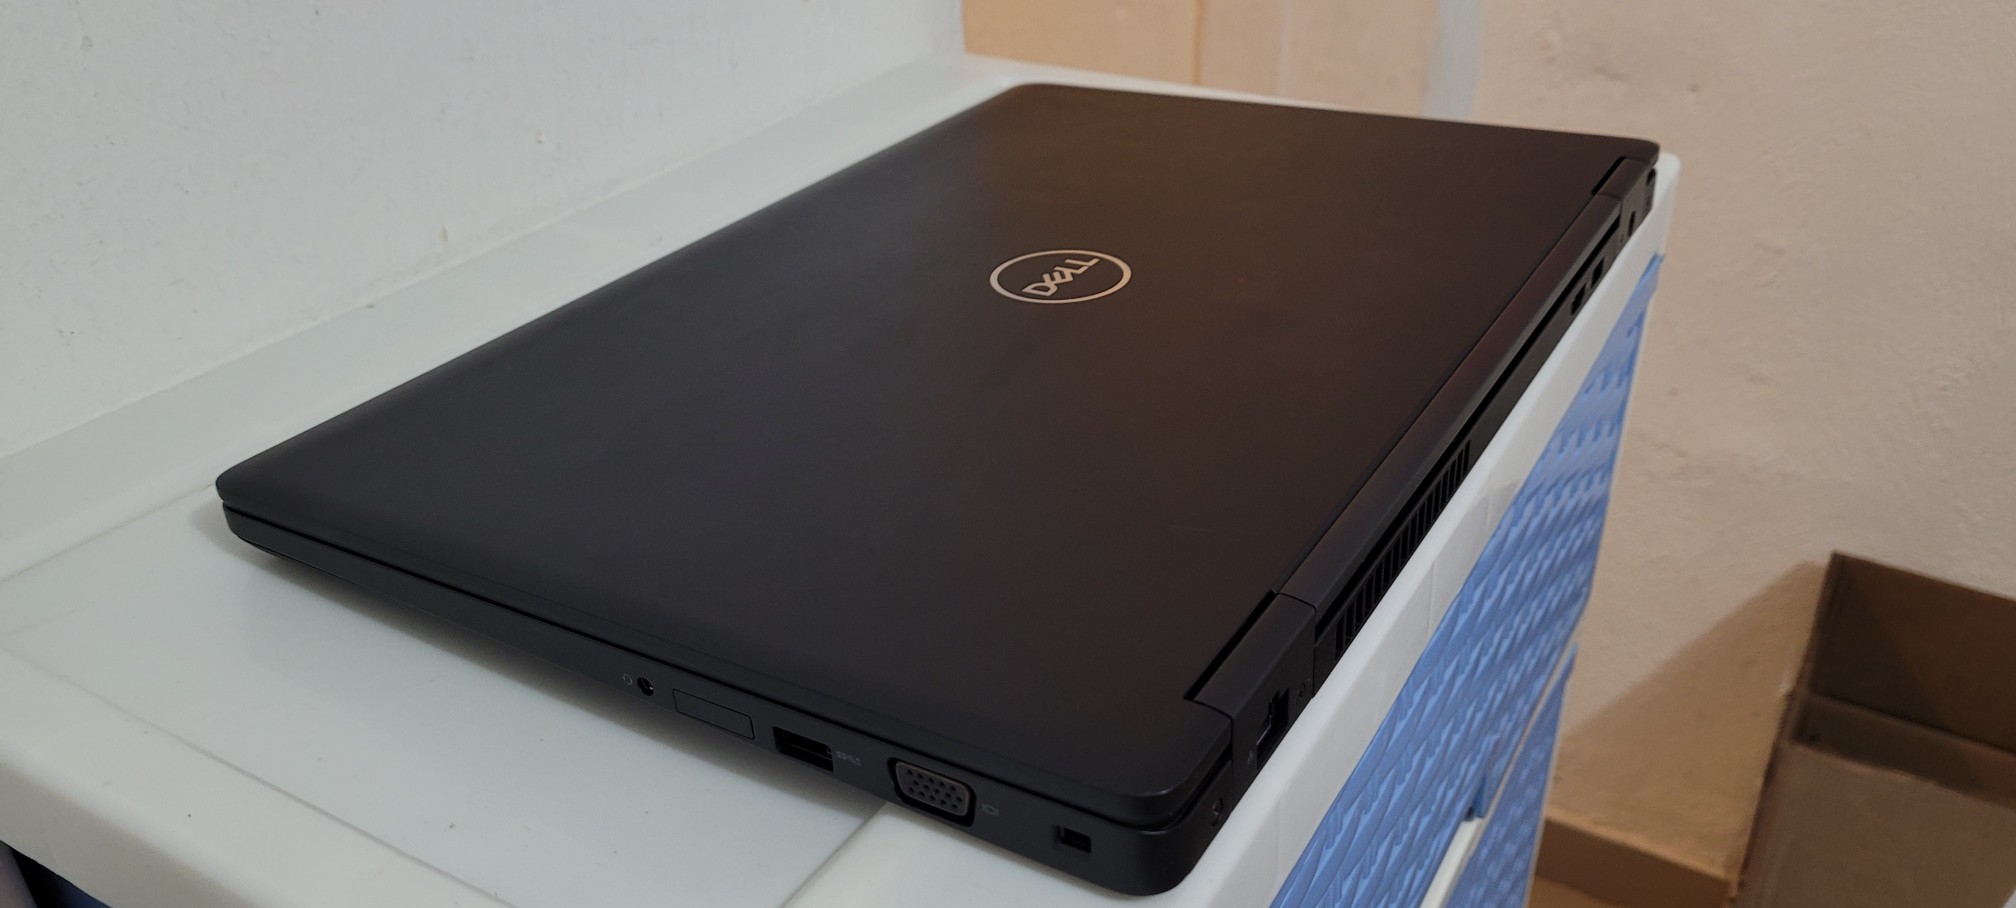 computadoras y laptops - Dell 5580 17 Pulg Core i7 7ma Gen Ram 16gb Disco 256gb Nvidea mx940 2gb 2